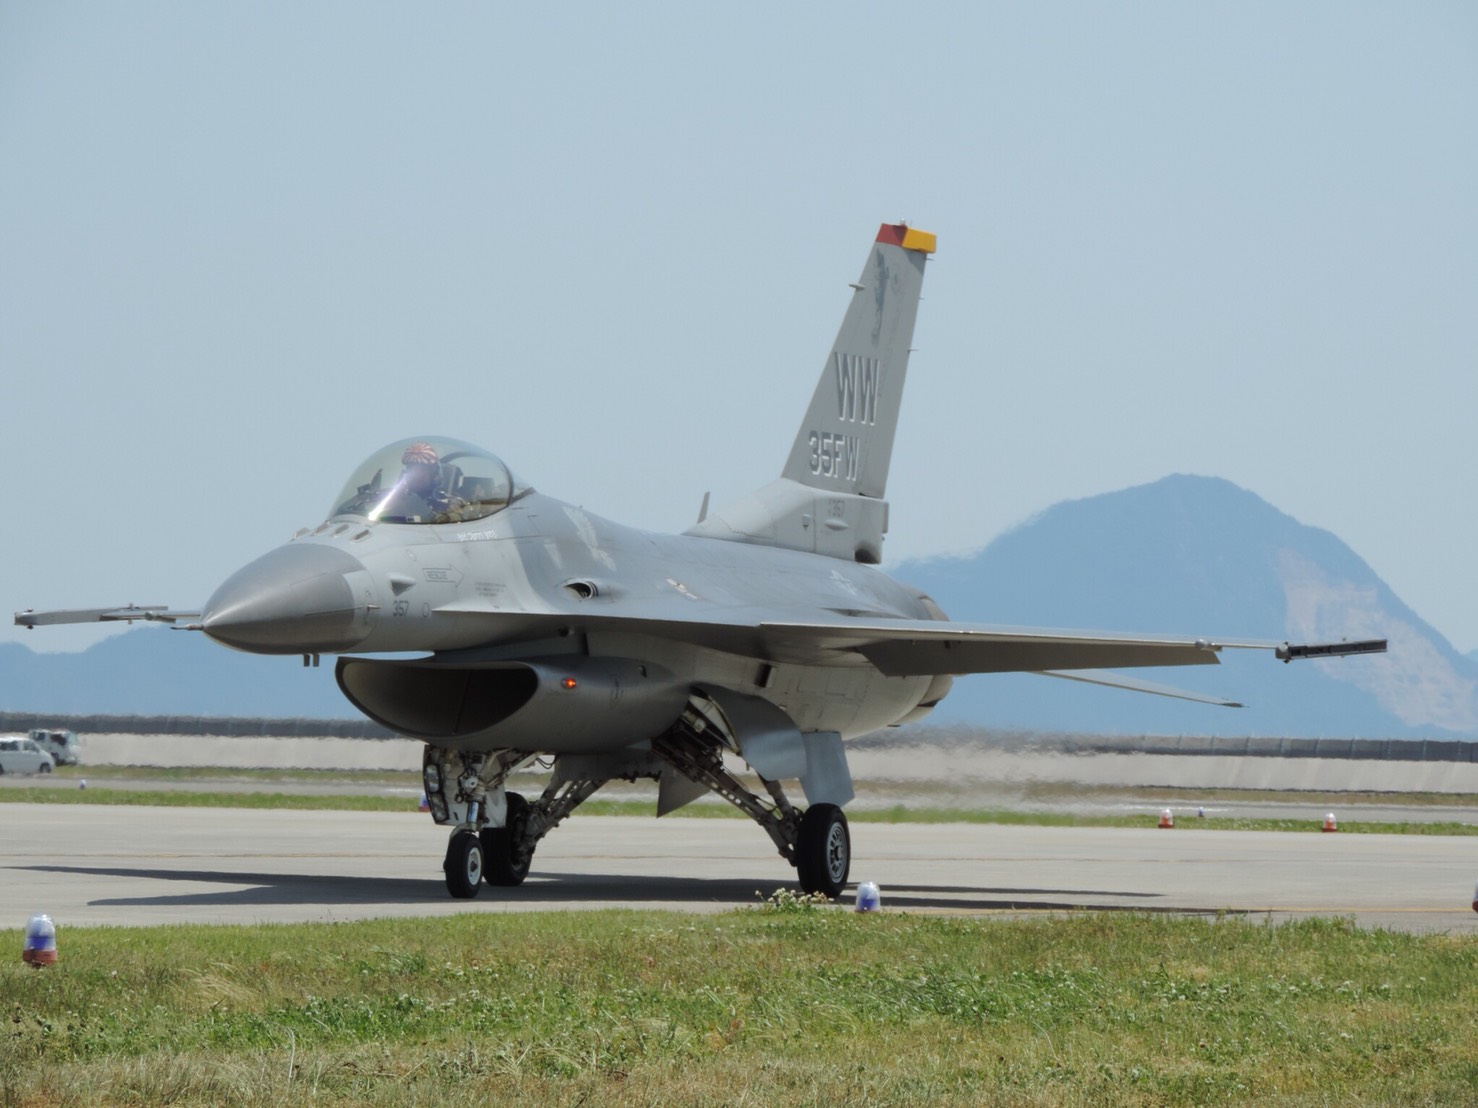 岩国フレンドシップデー2018 PACAF F-16 Demo Flight 〜午前の部〜